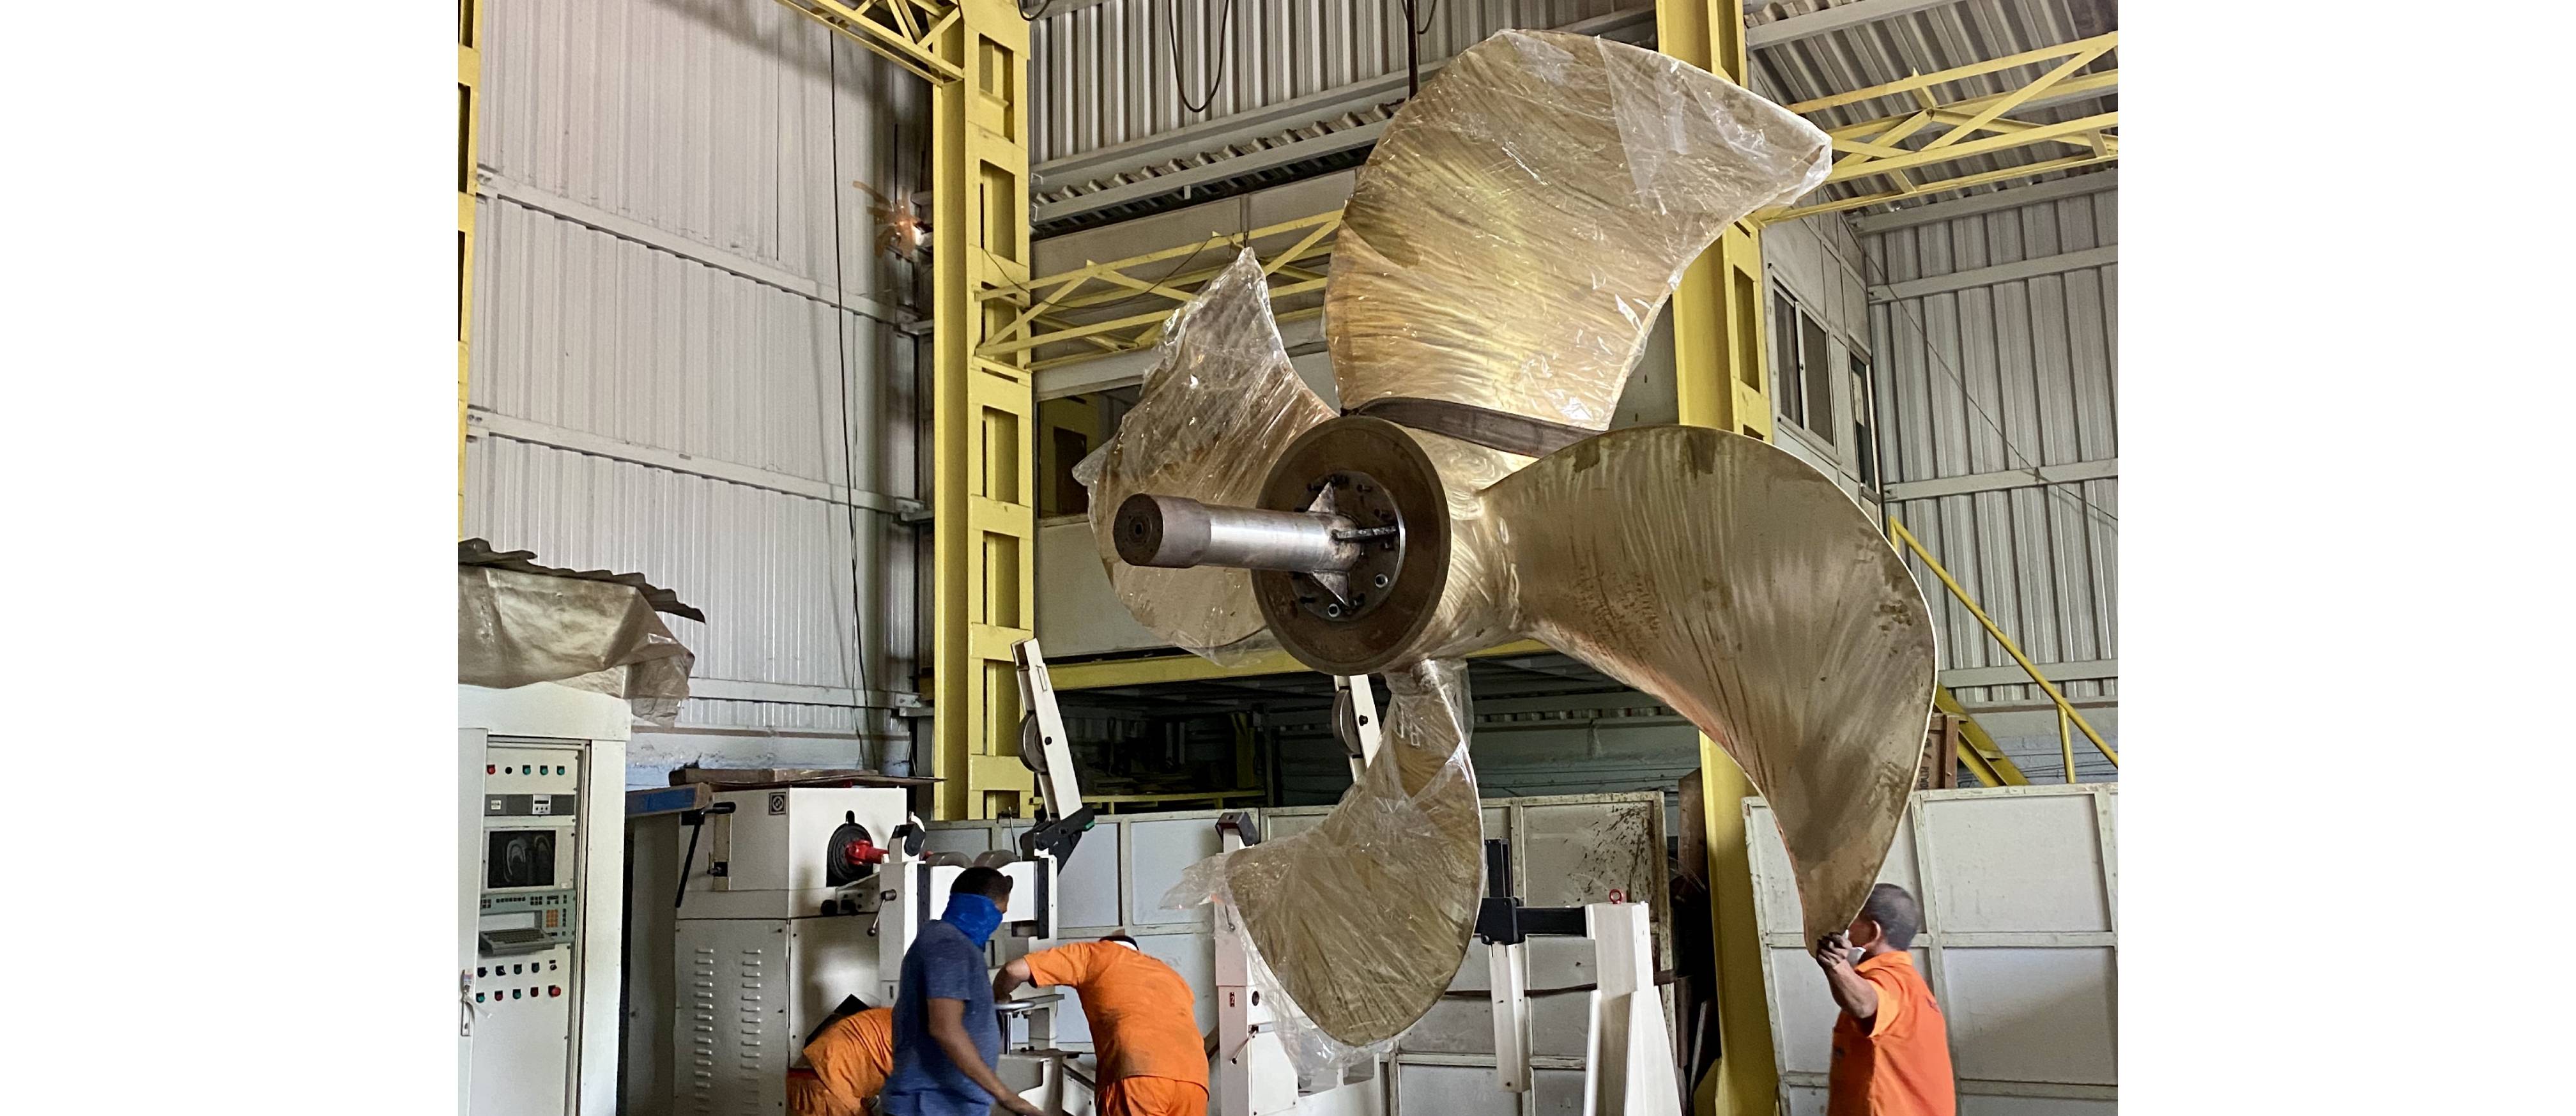 Blog on Marine propeller repair by Rokade Group